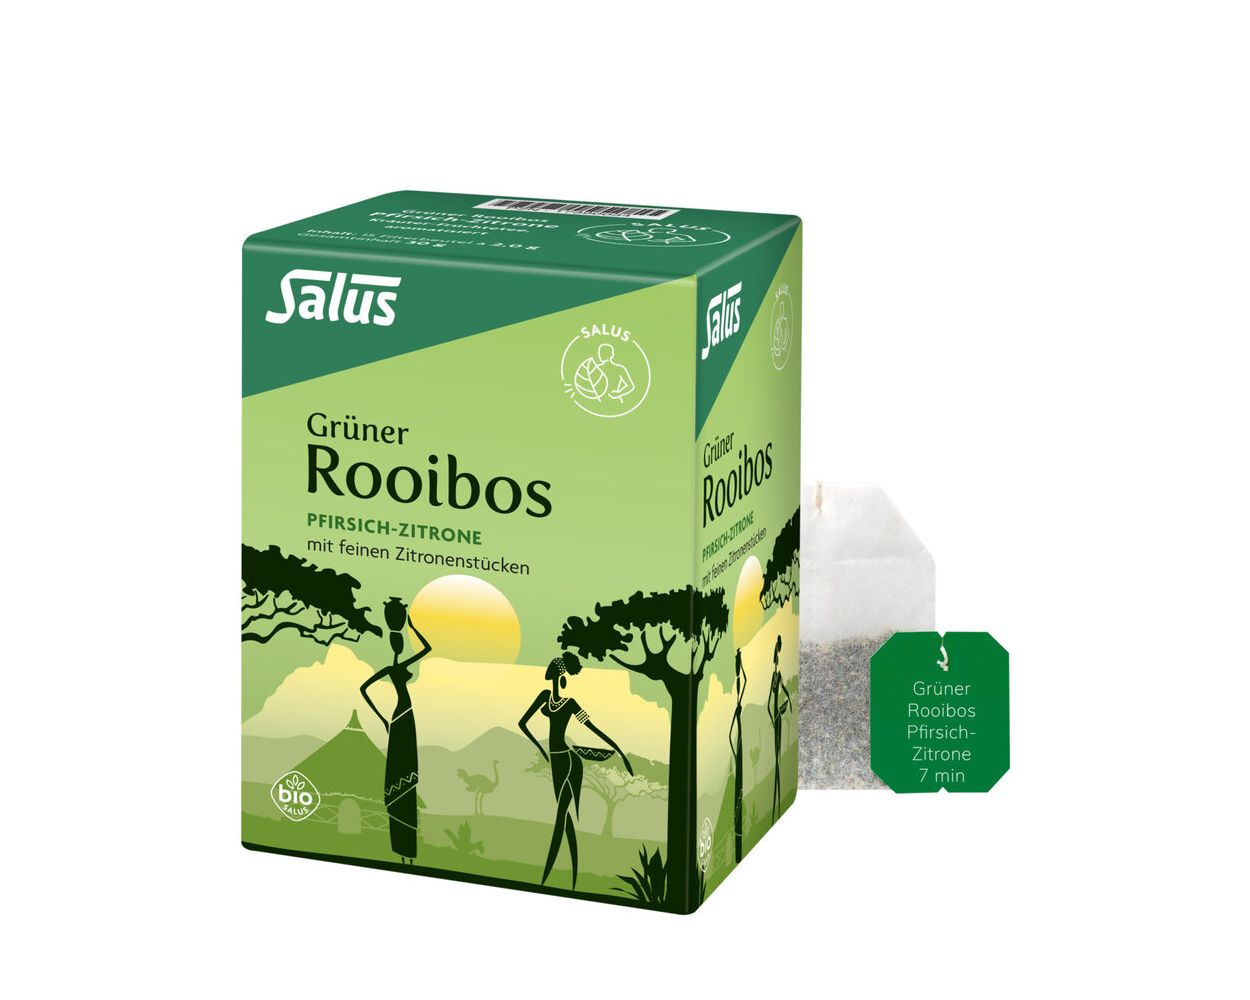 Salus Grüner Rooibos VITALIA Bei bequem | bestellen! einfach Zitrone Pfirsich und online